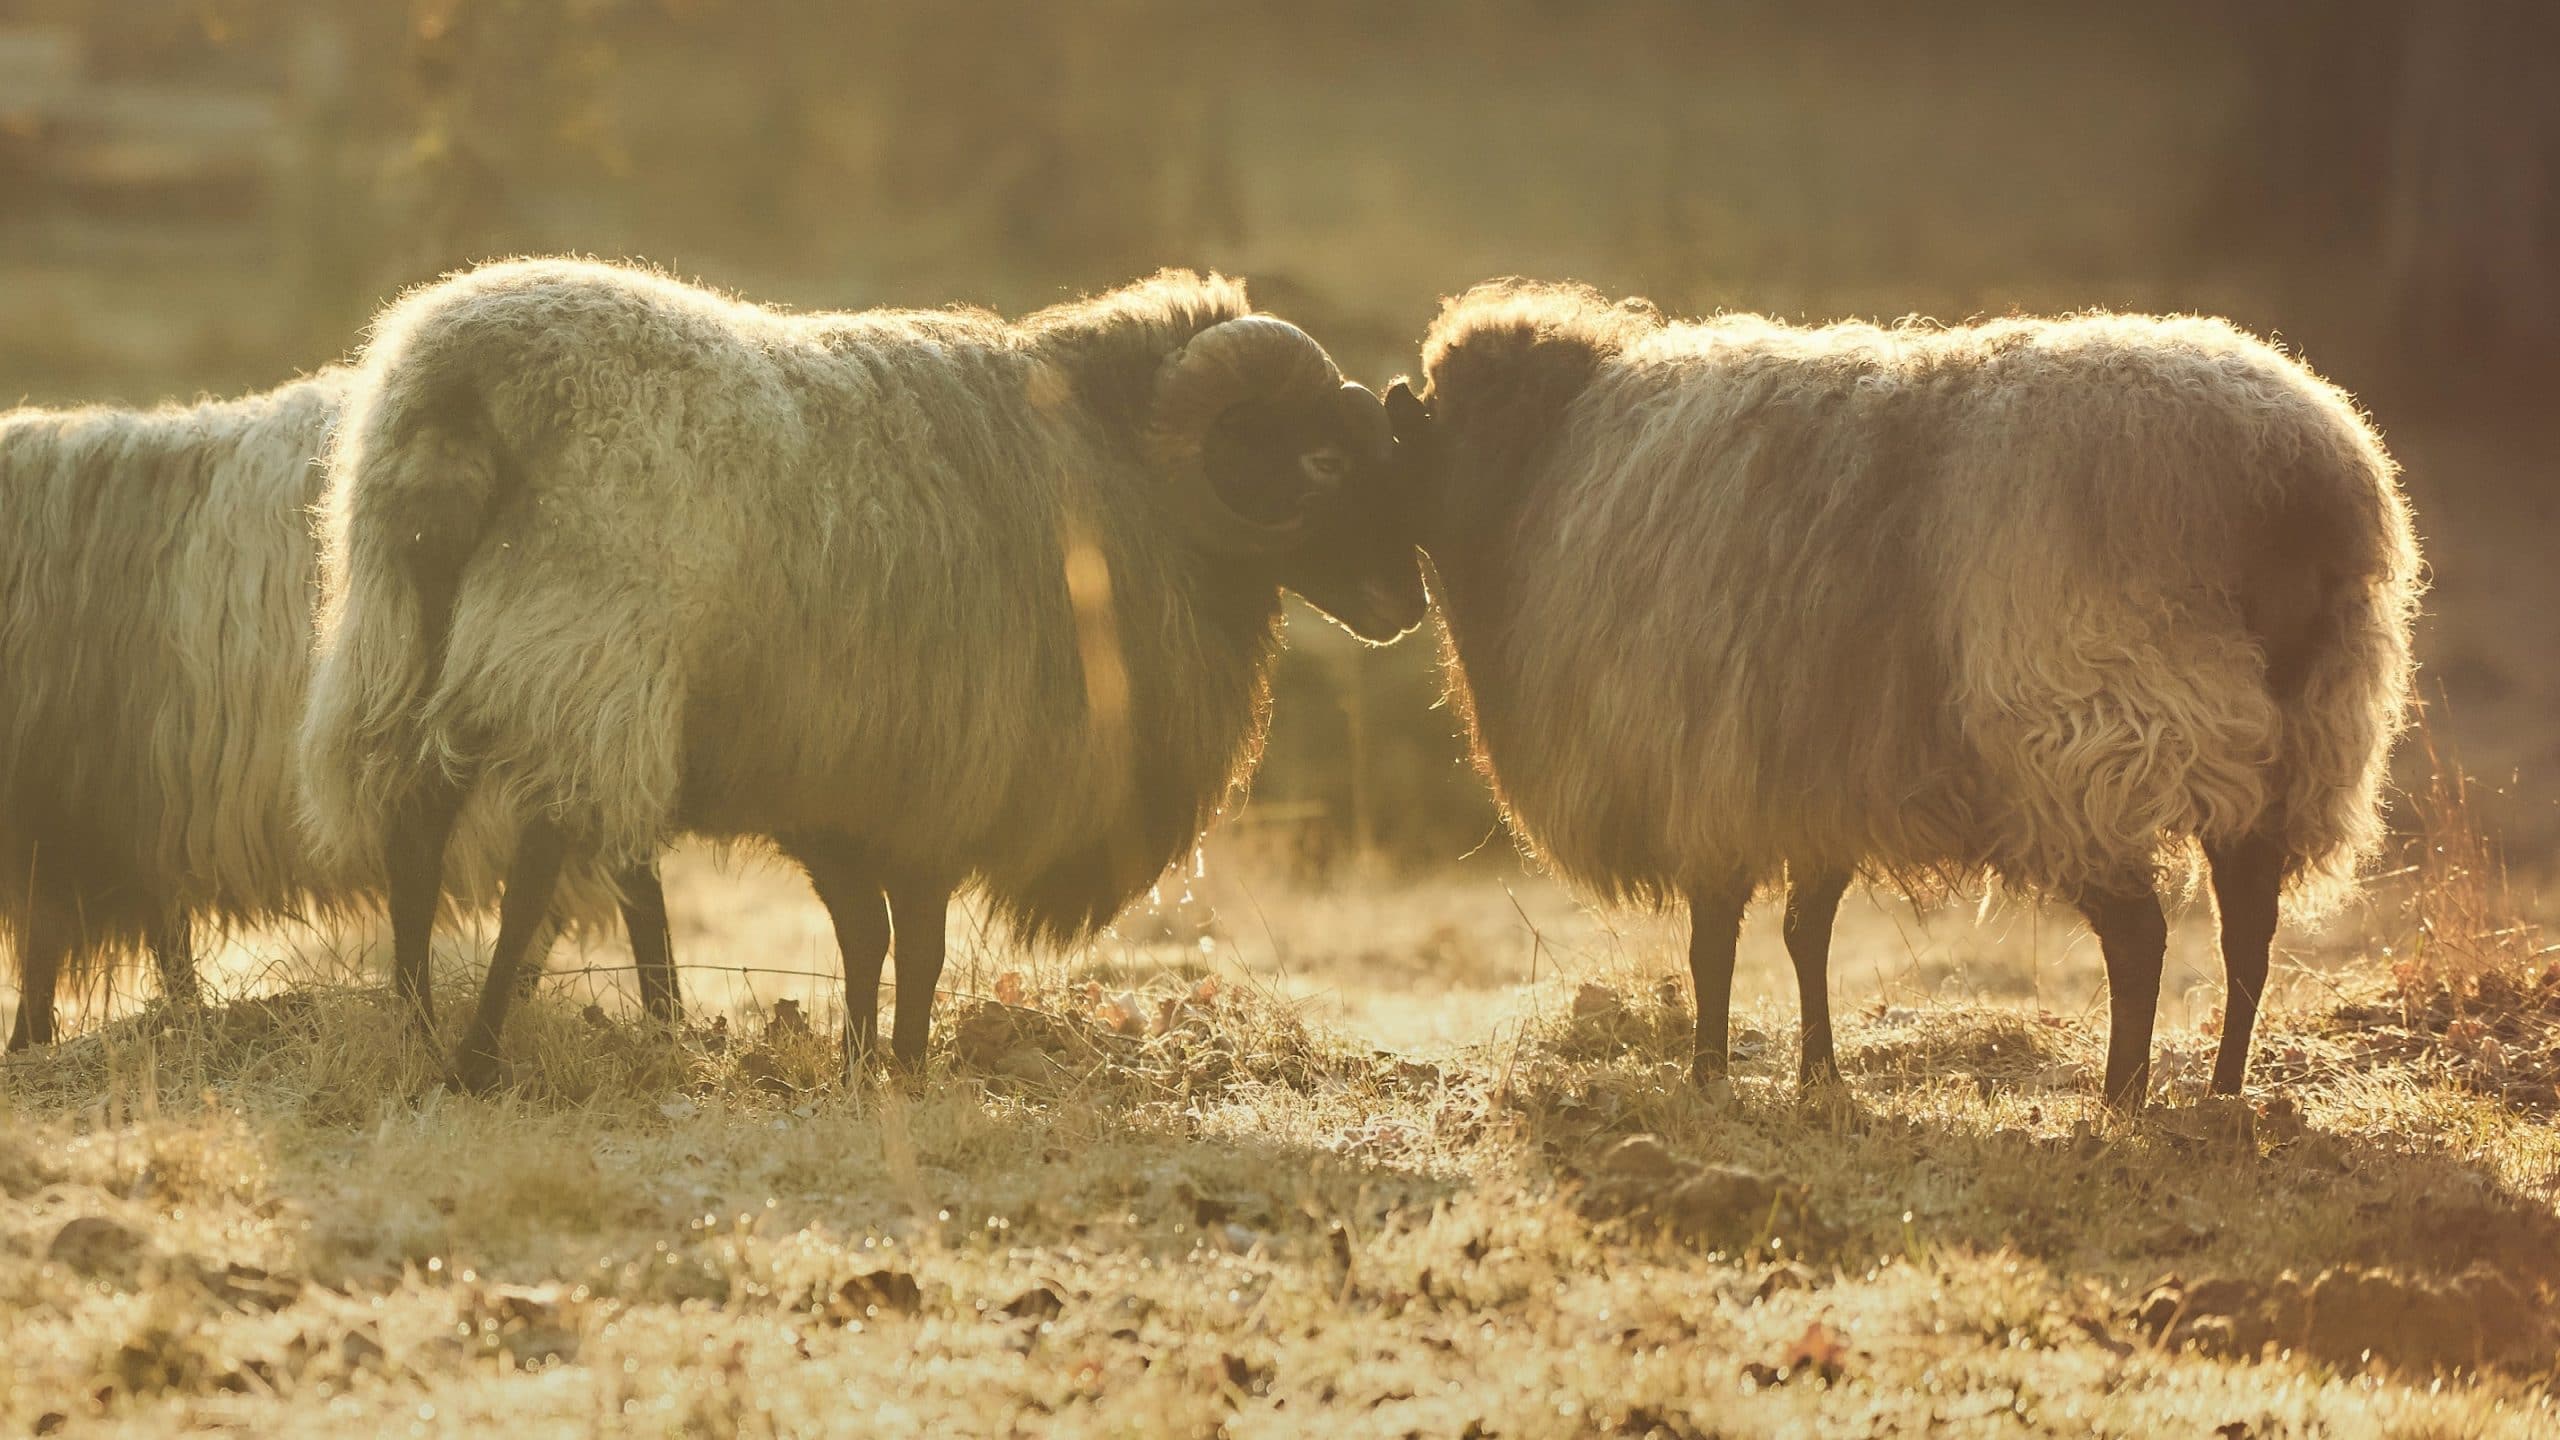 Ram and sheep head to head